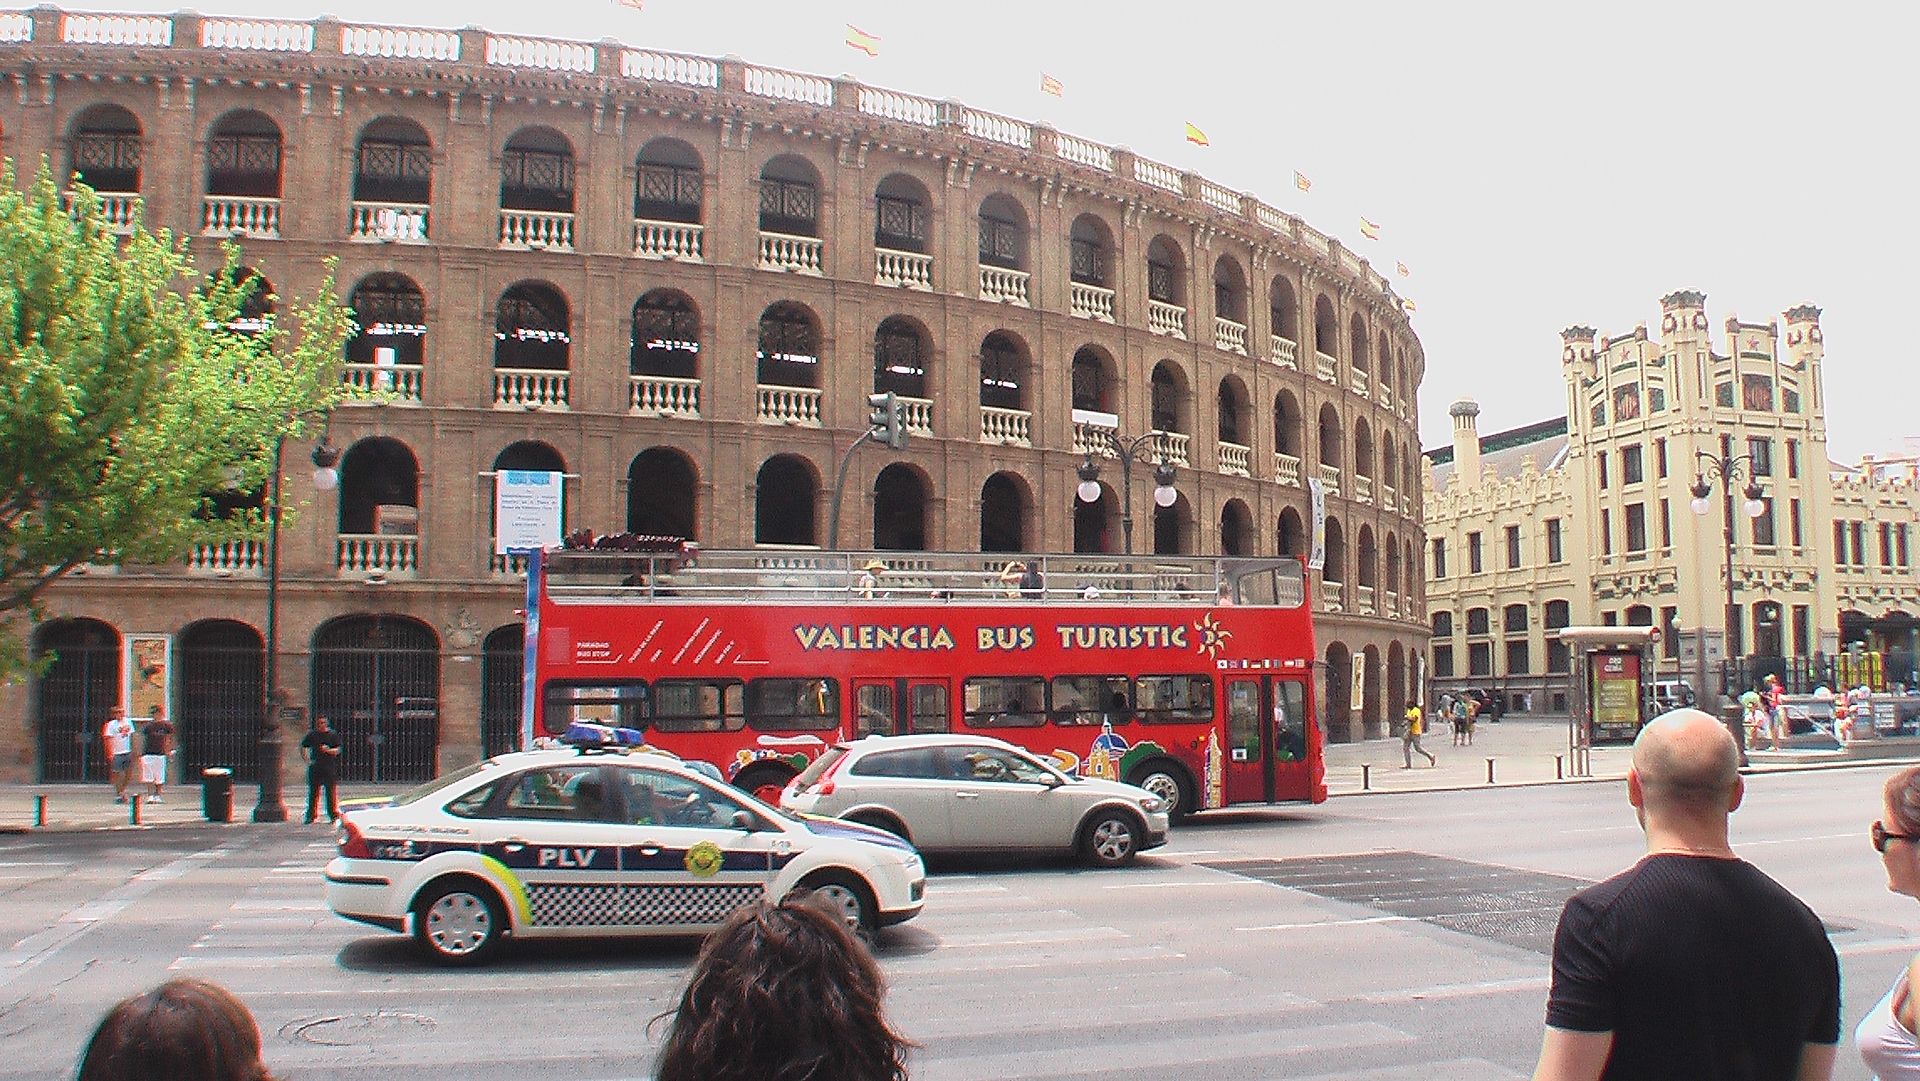 Fotos 360 Plaza de toros #VidePan por #Valencia